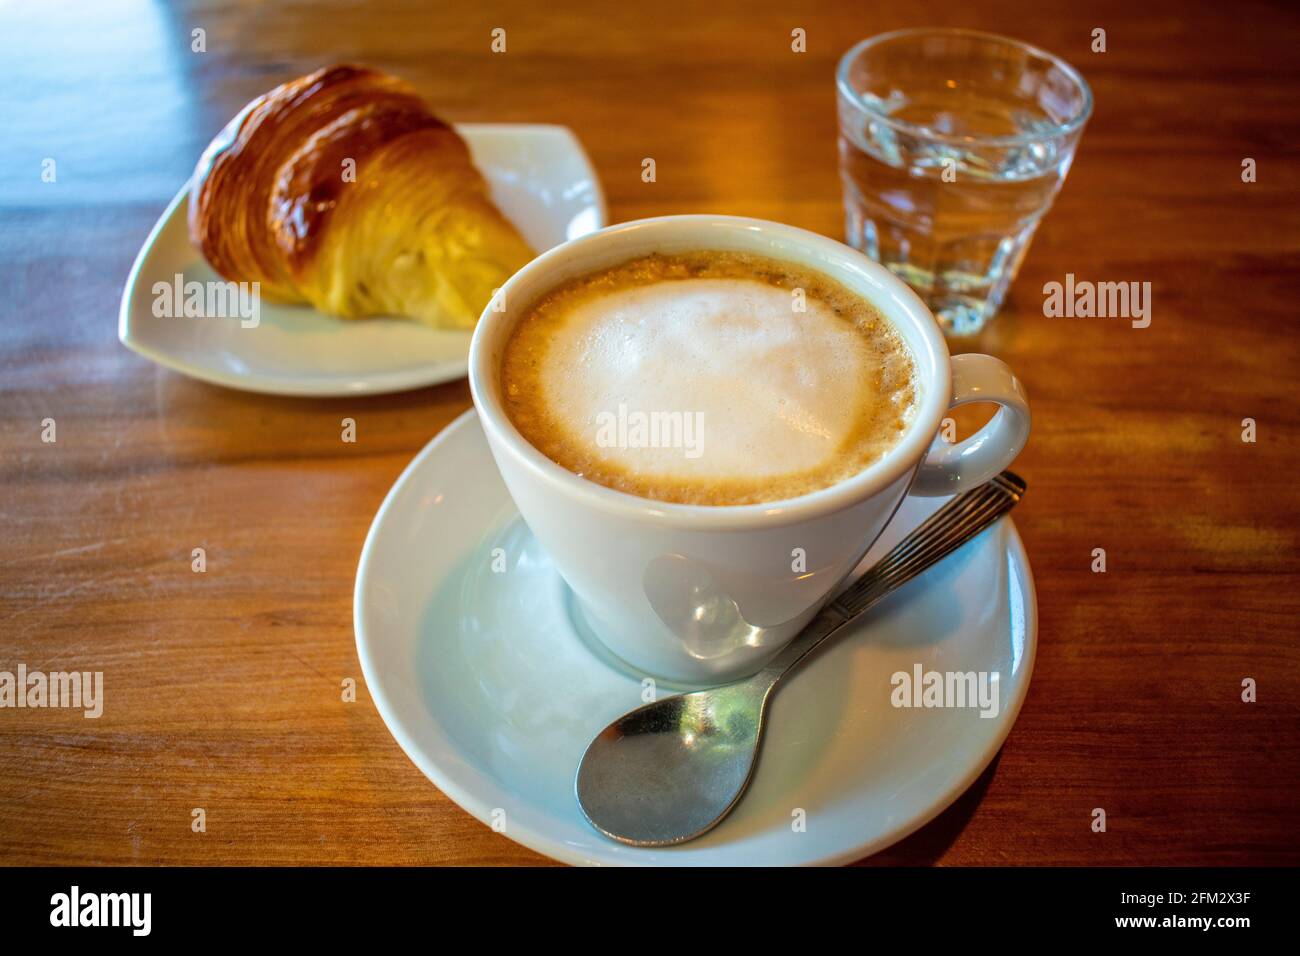 Café avec lait (latte) et croissant au beurre. Banque D'Images